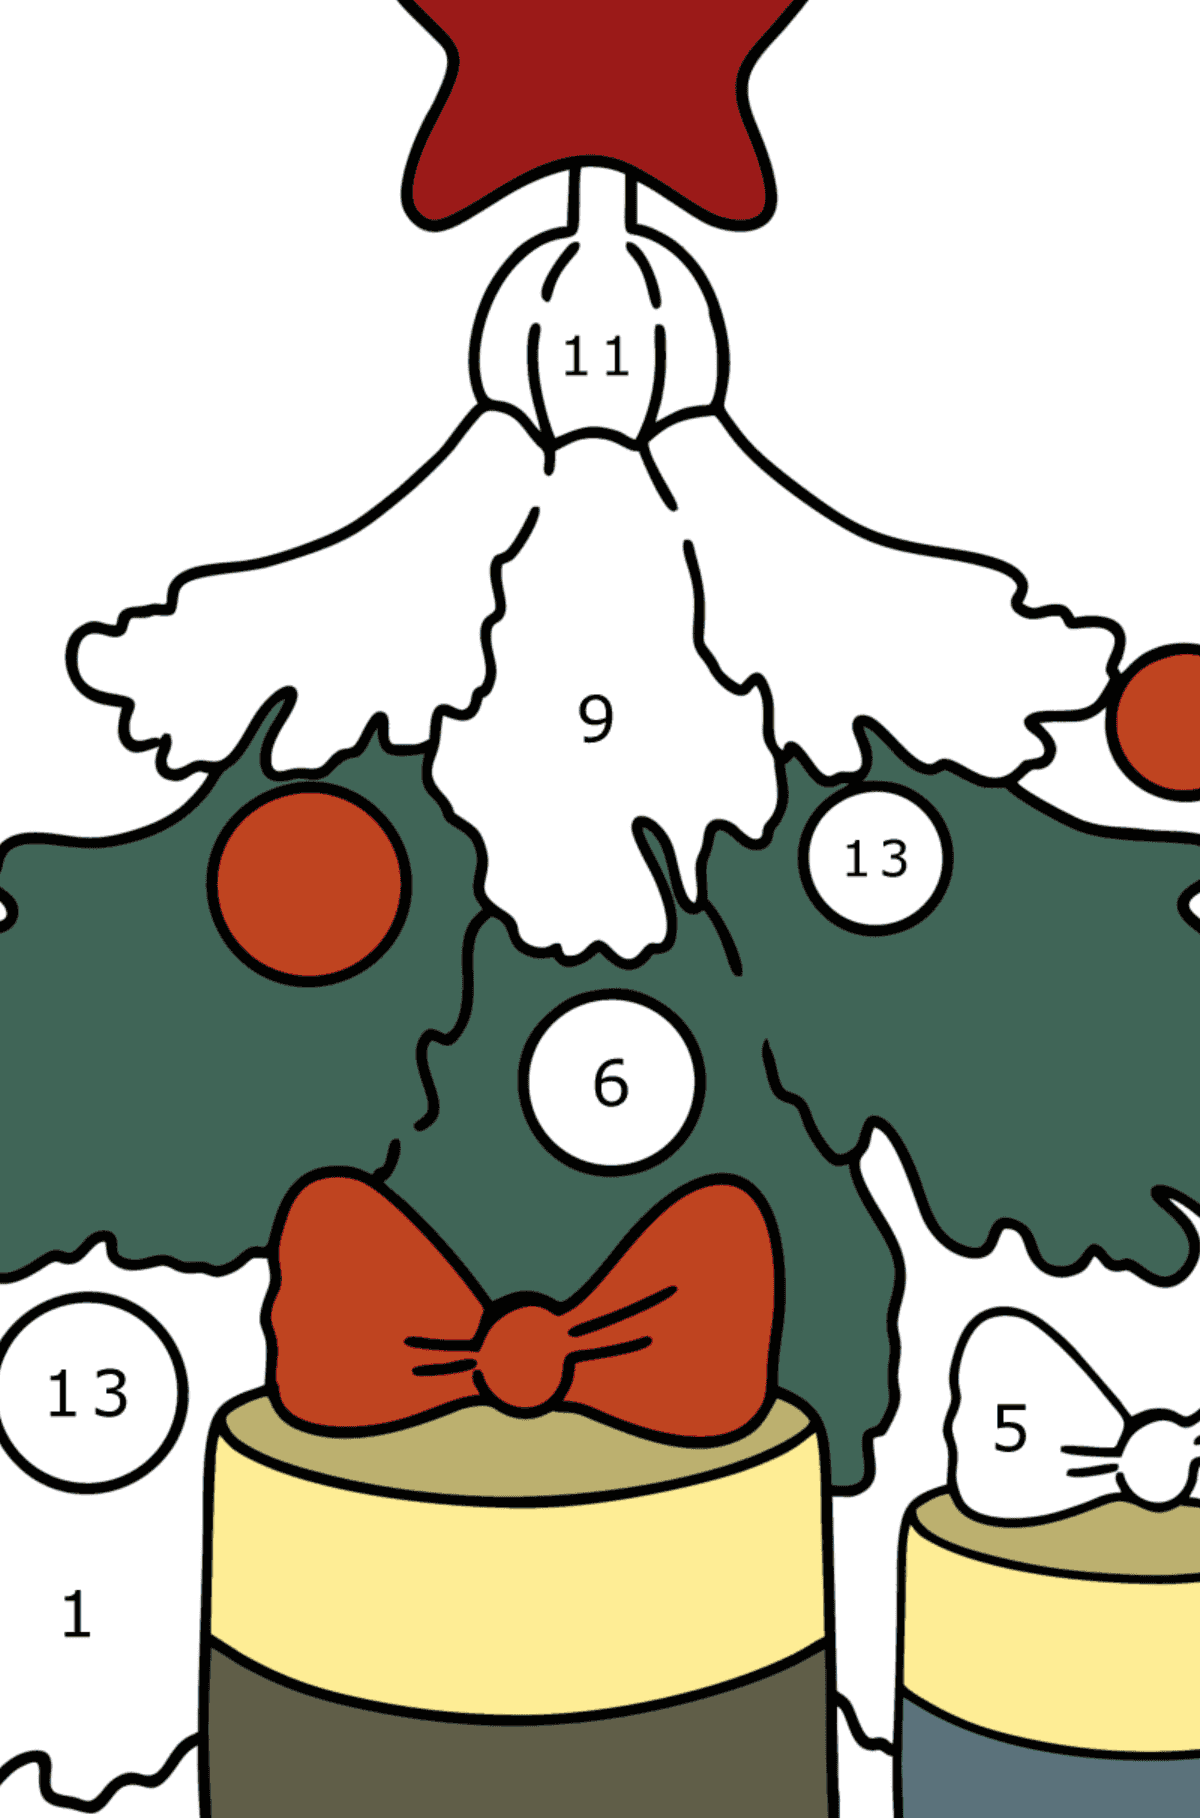 Ausmalbild Weihnachtsbaum und Geschenke - Malen nach Zahlen für Kinder